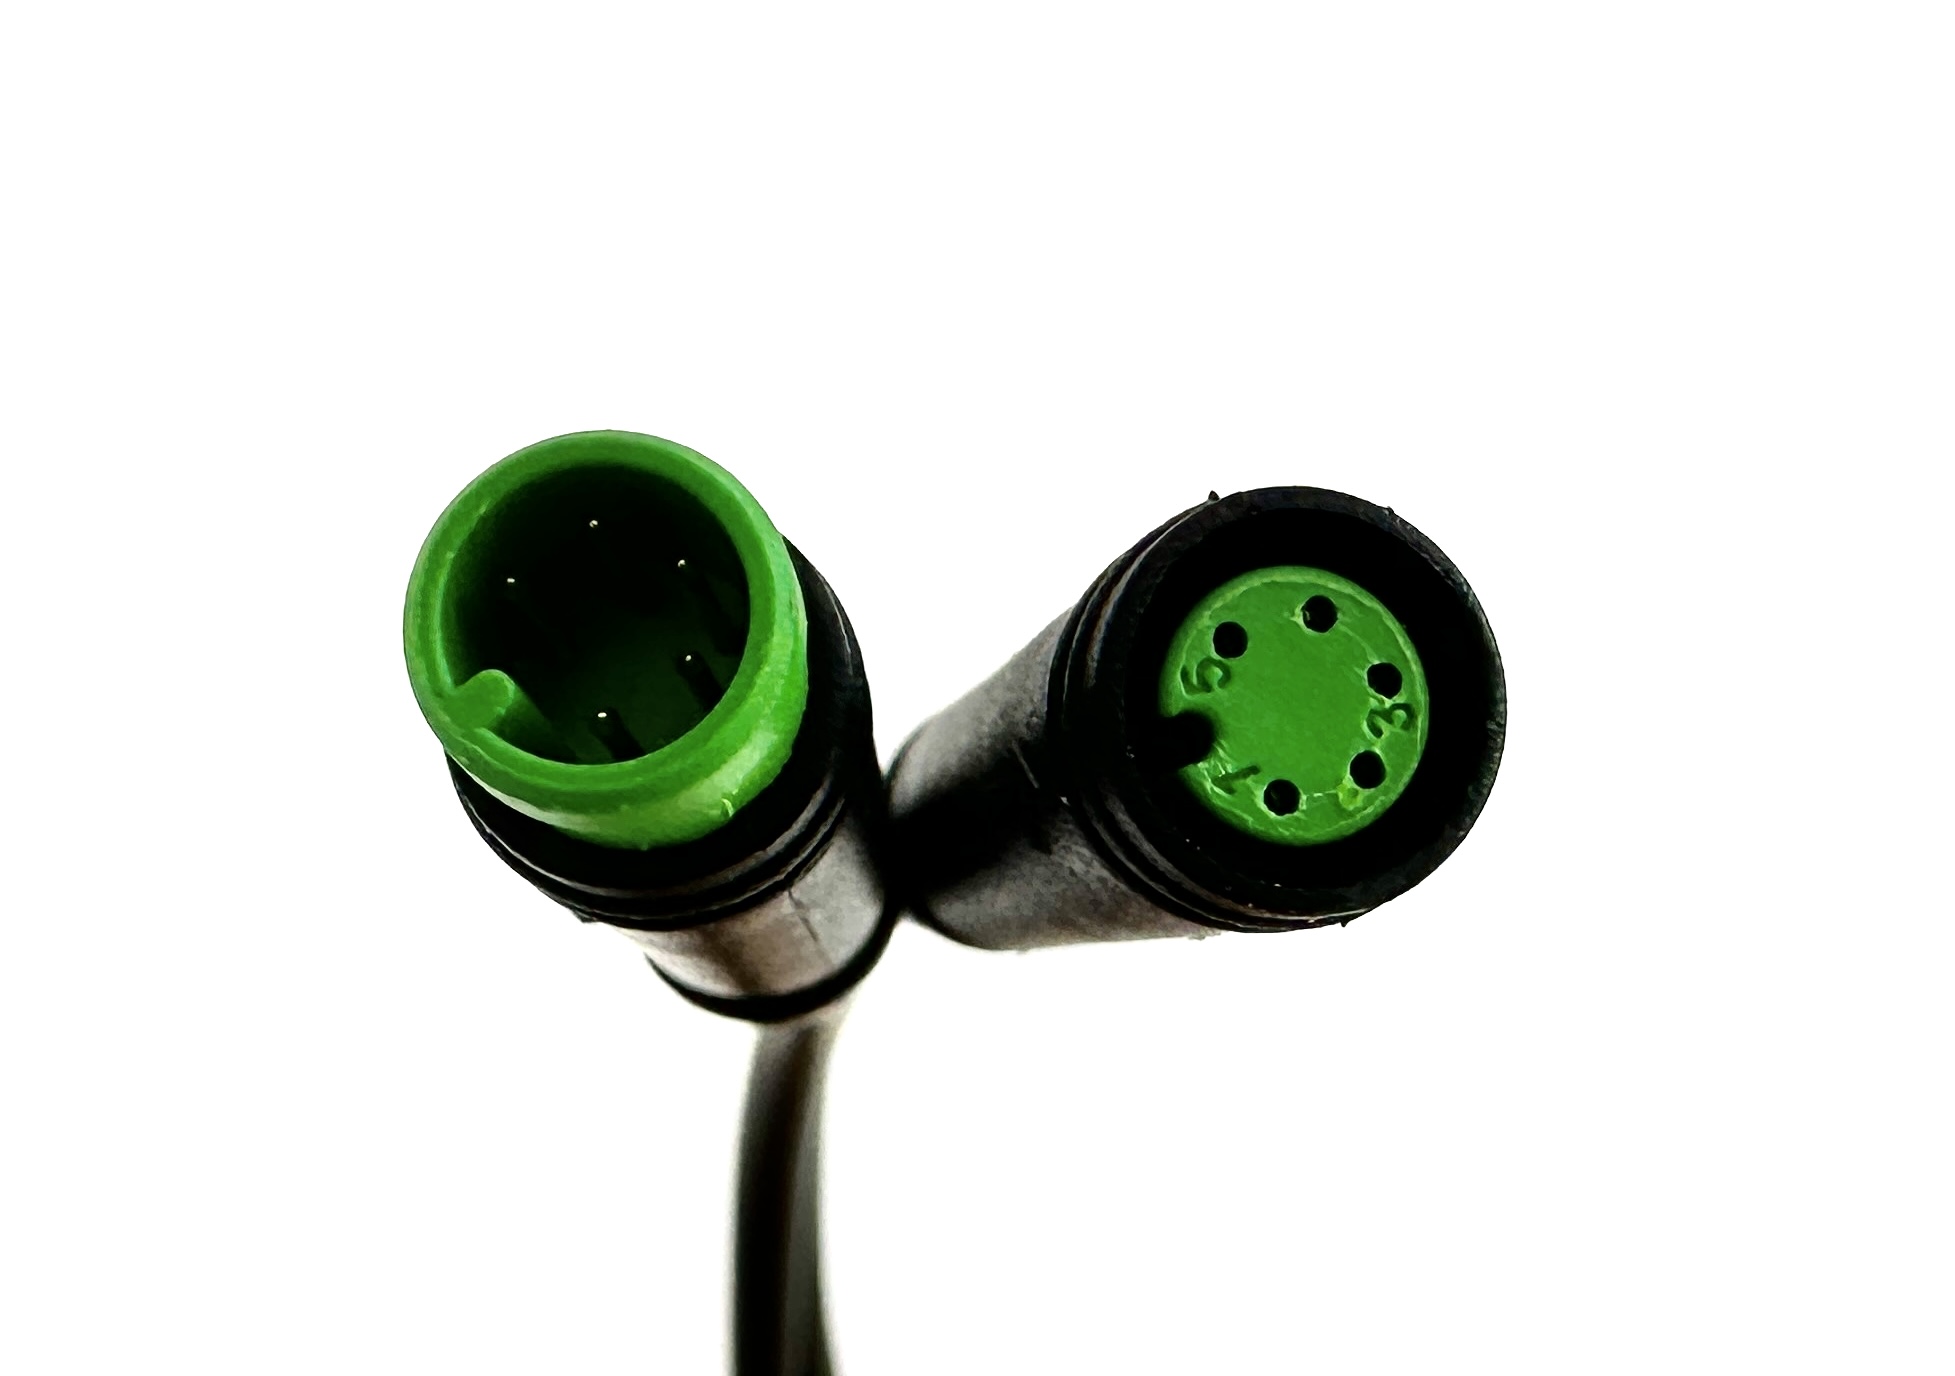 HIGO / Julet Câble d'extension 30 cm pour Ebike, 5 PIN femelle à mâle, vert